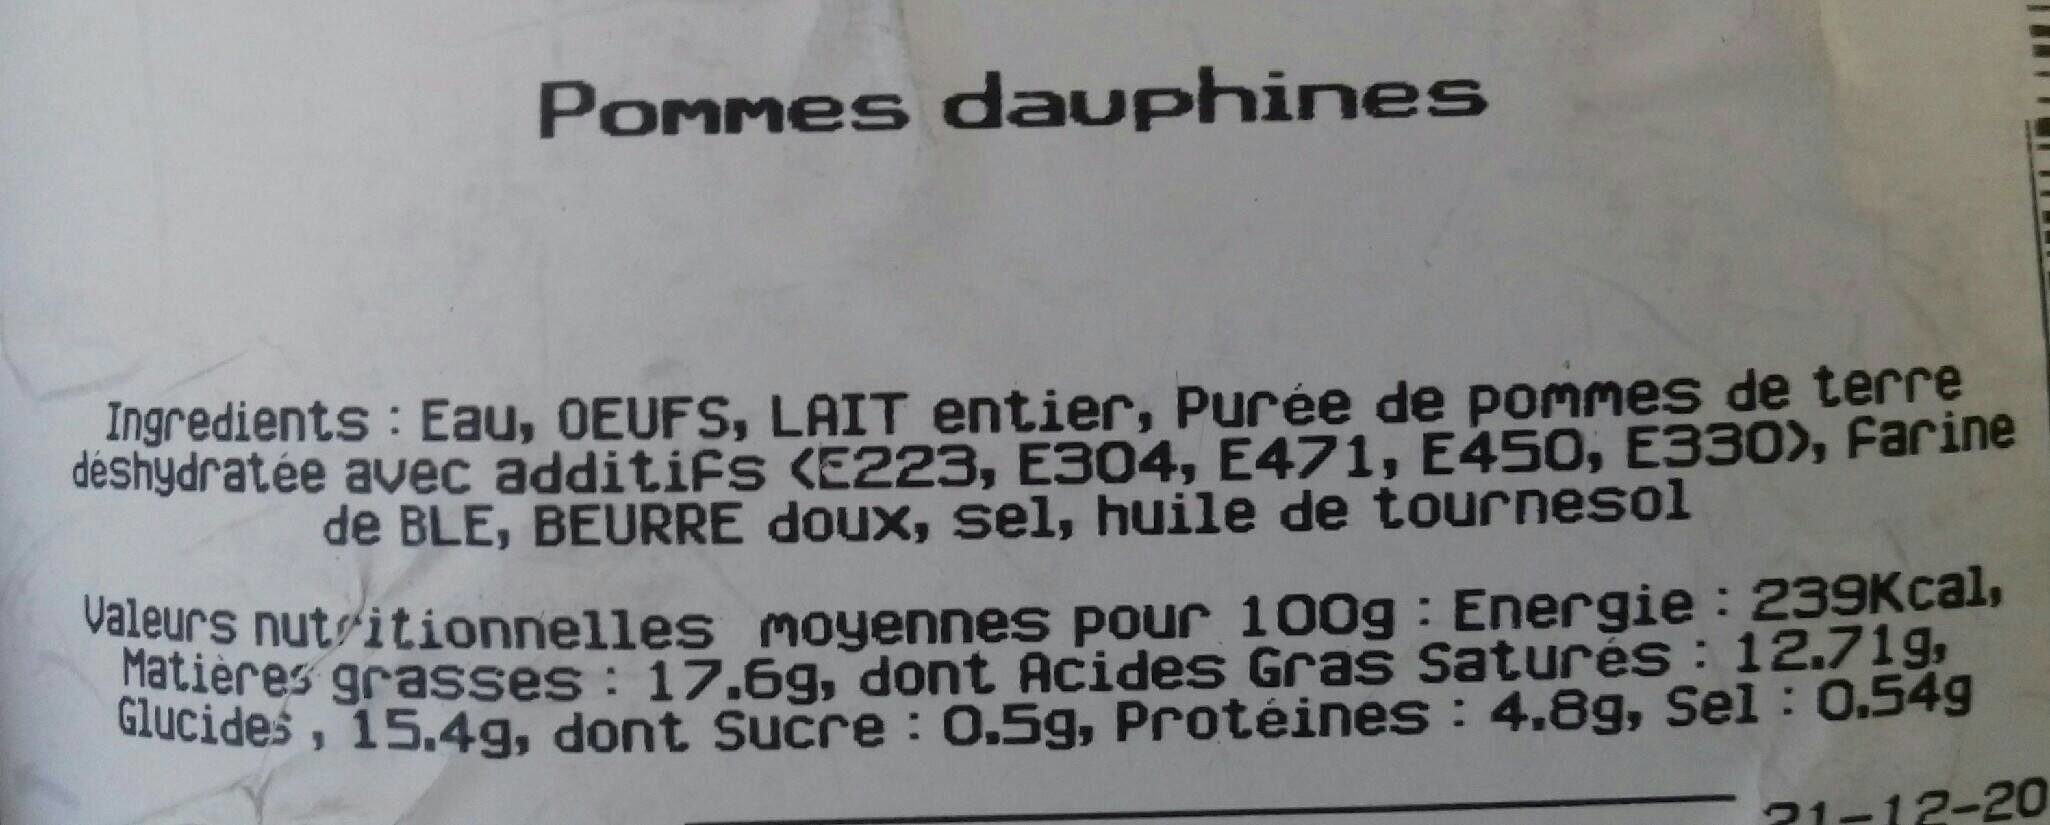 Pommes dauphines - Ingredients - fr